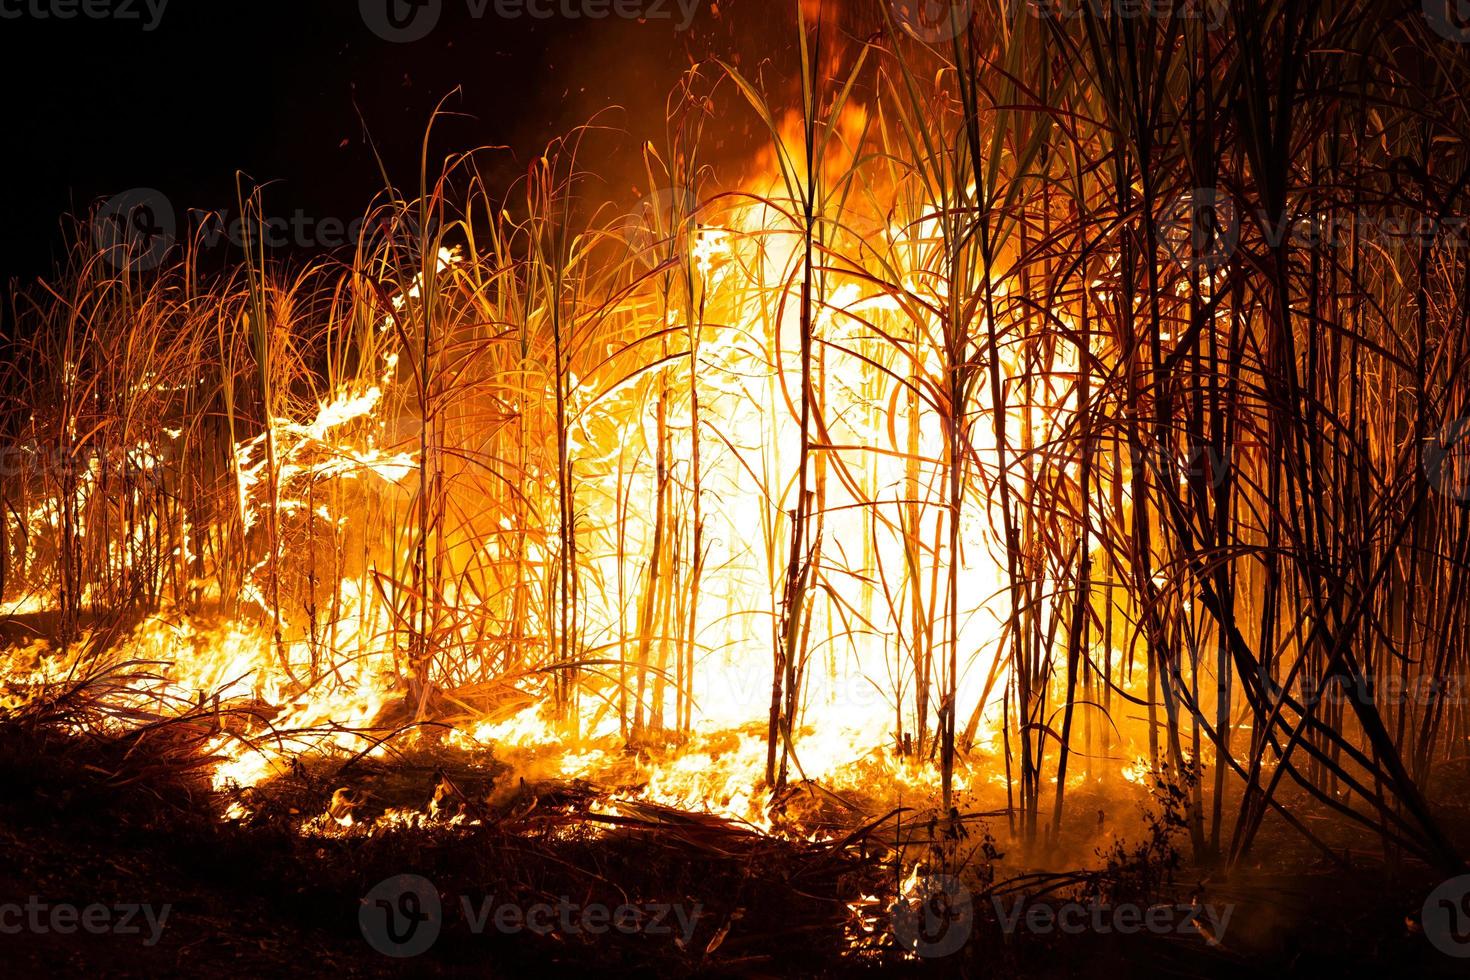 la canne à sucre est brûlée pour enlever les feuilles extérieures autour des tiges avant la récolte photo